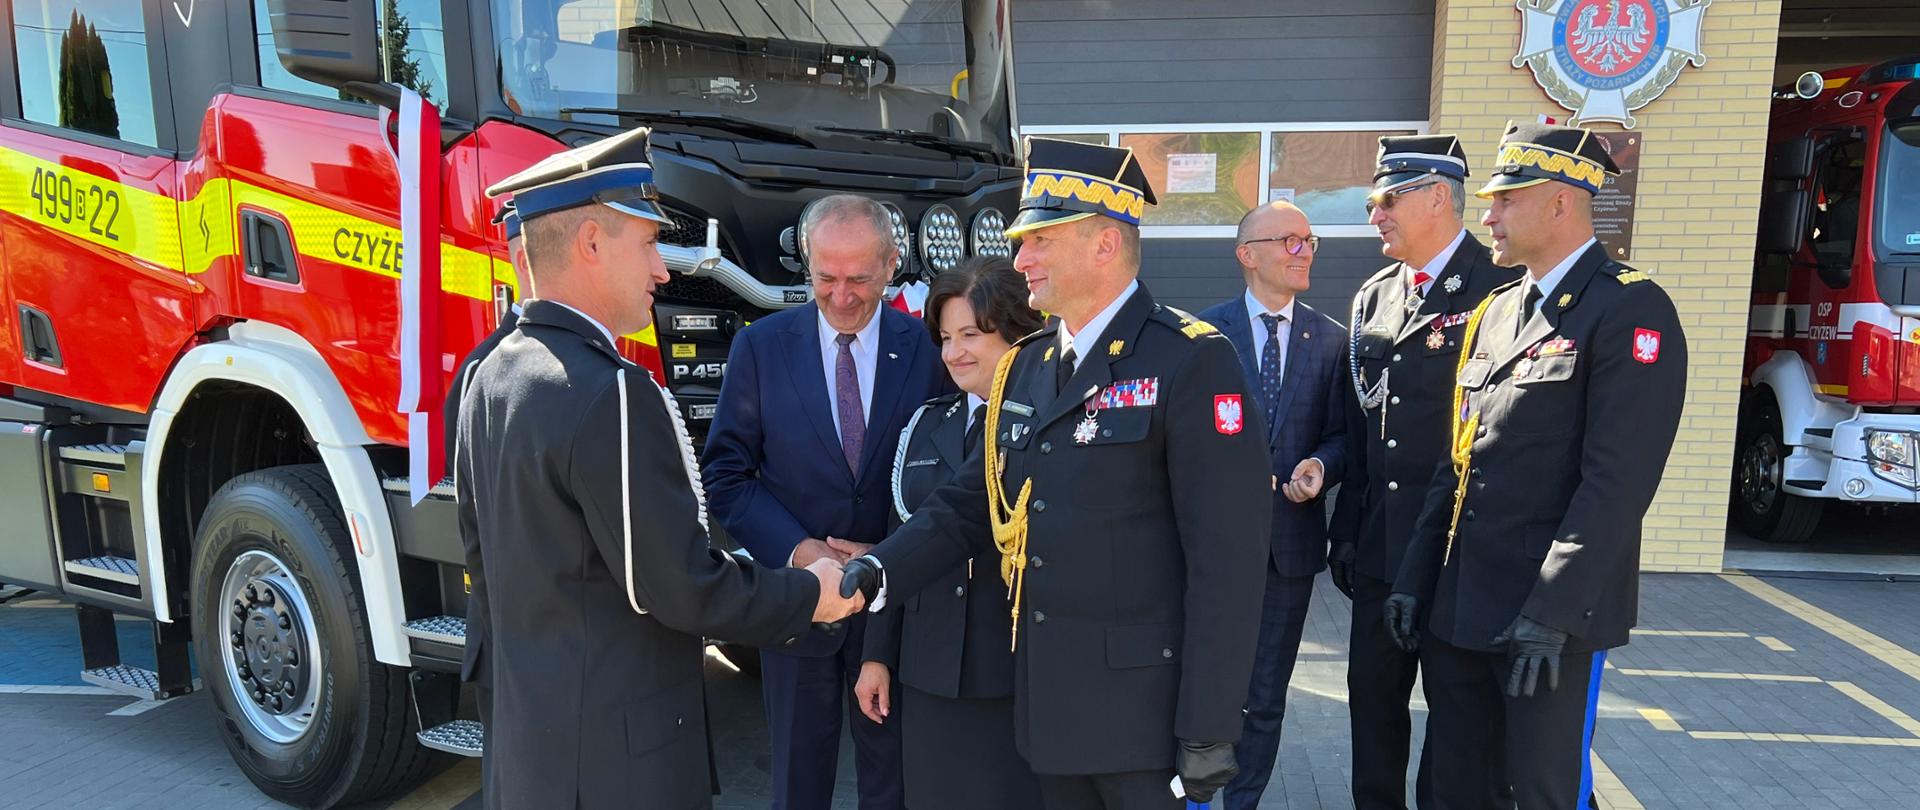 Zastępca komendanta głównego PSP podaje rękę druhowi OSP w geście gratulacji, za nimi grupa strażaków i osoby cywilne oraz nowy samochód rat-gaśn